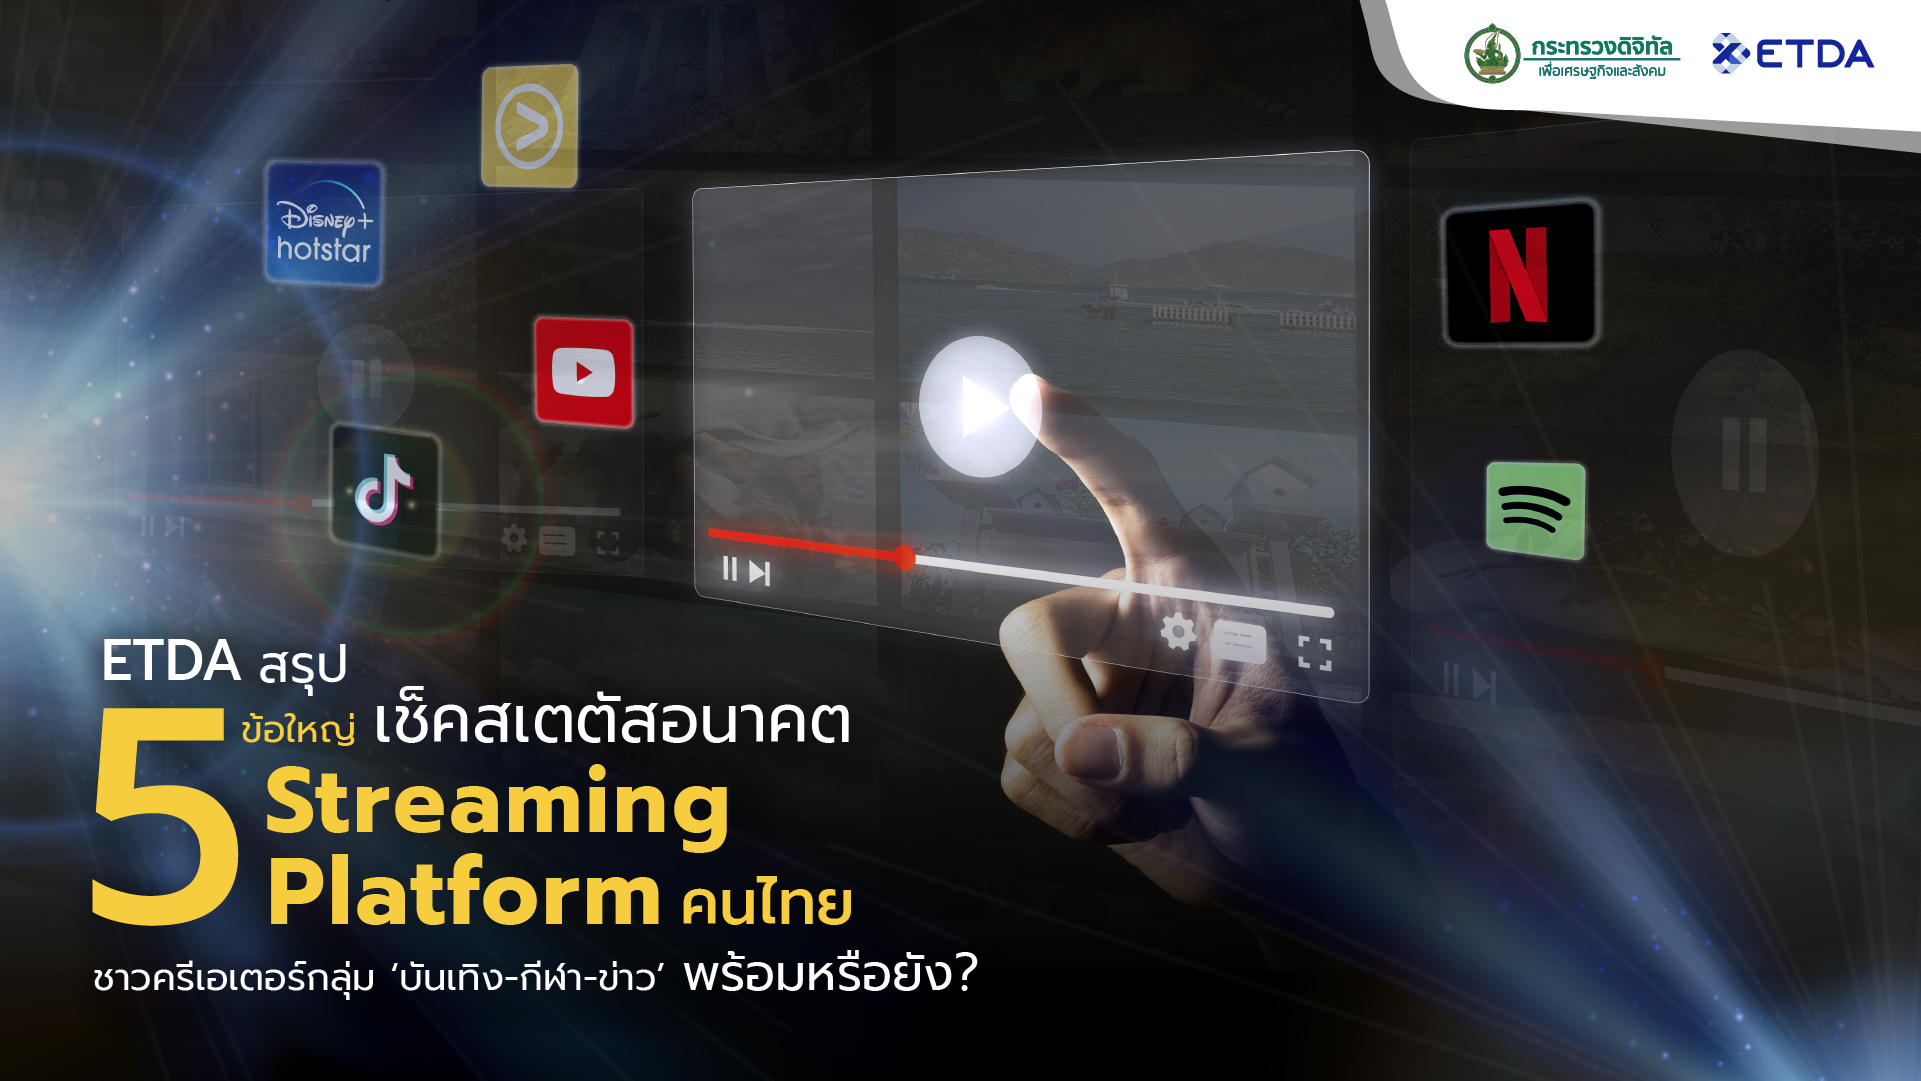 ETDA สรุป 5 ข้อใหญ่ เช็คสเตตัสอนาคต Streaming Platform คนไทย ชาวครีเอเตอร์กลุ่ม ‘บันเทิง-กีฬา-ข่าว’ พร้อมหรือยัง?